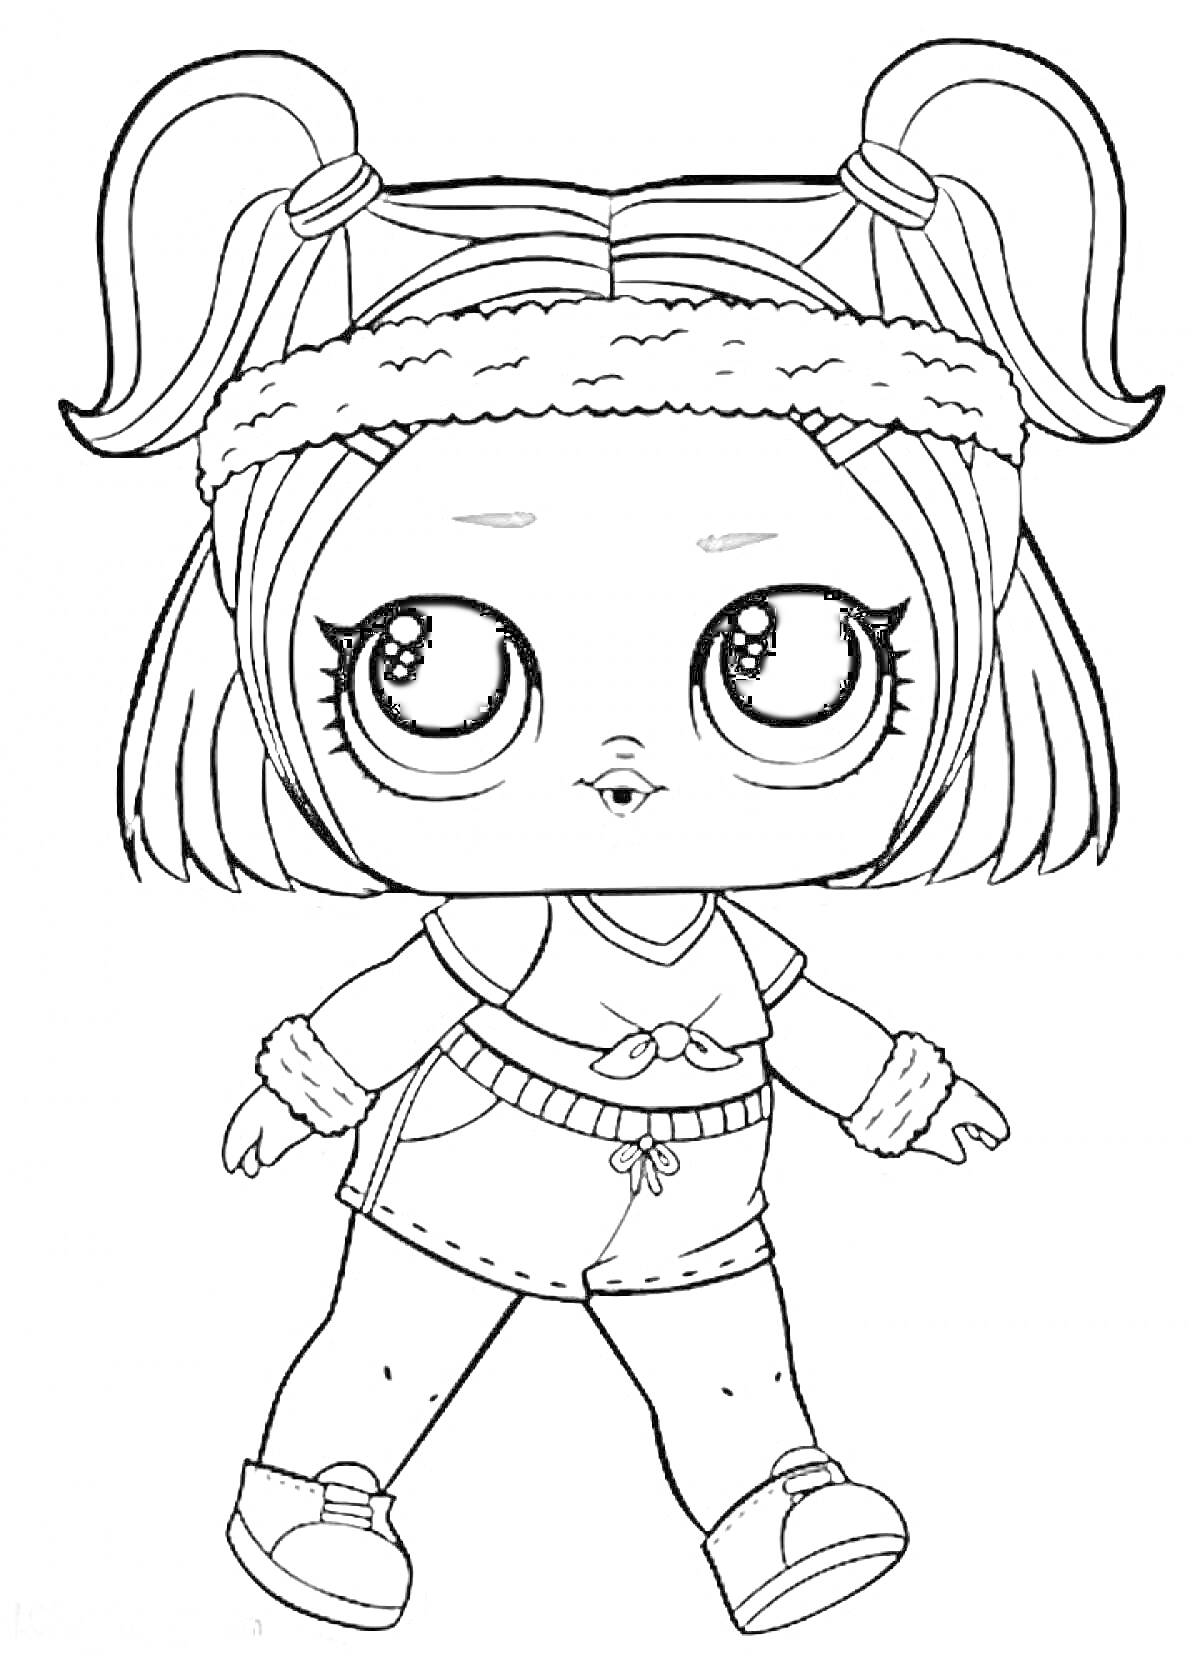 Раскраска Кукла Лол с большими глазами в спортивной одежде, с хвостиками и повязкой на голове